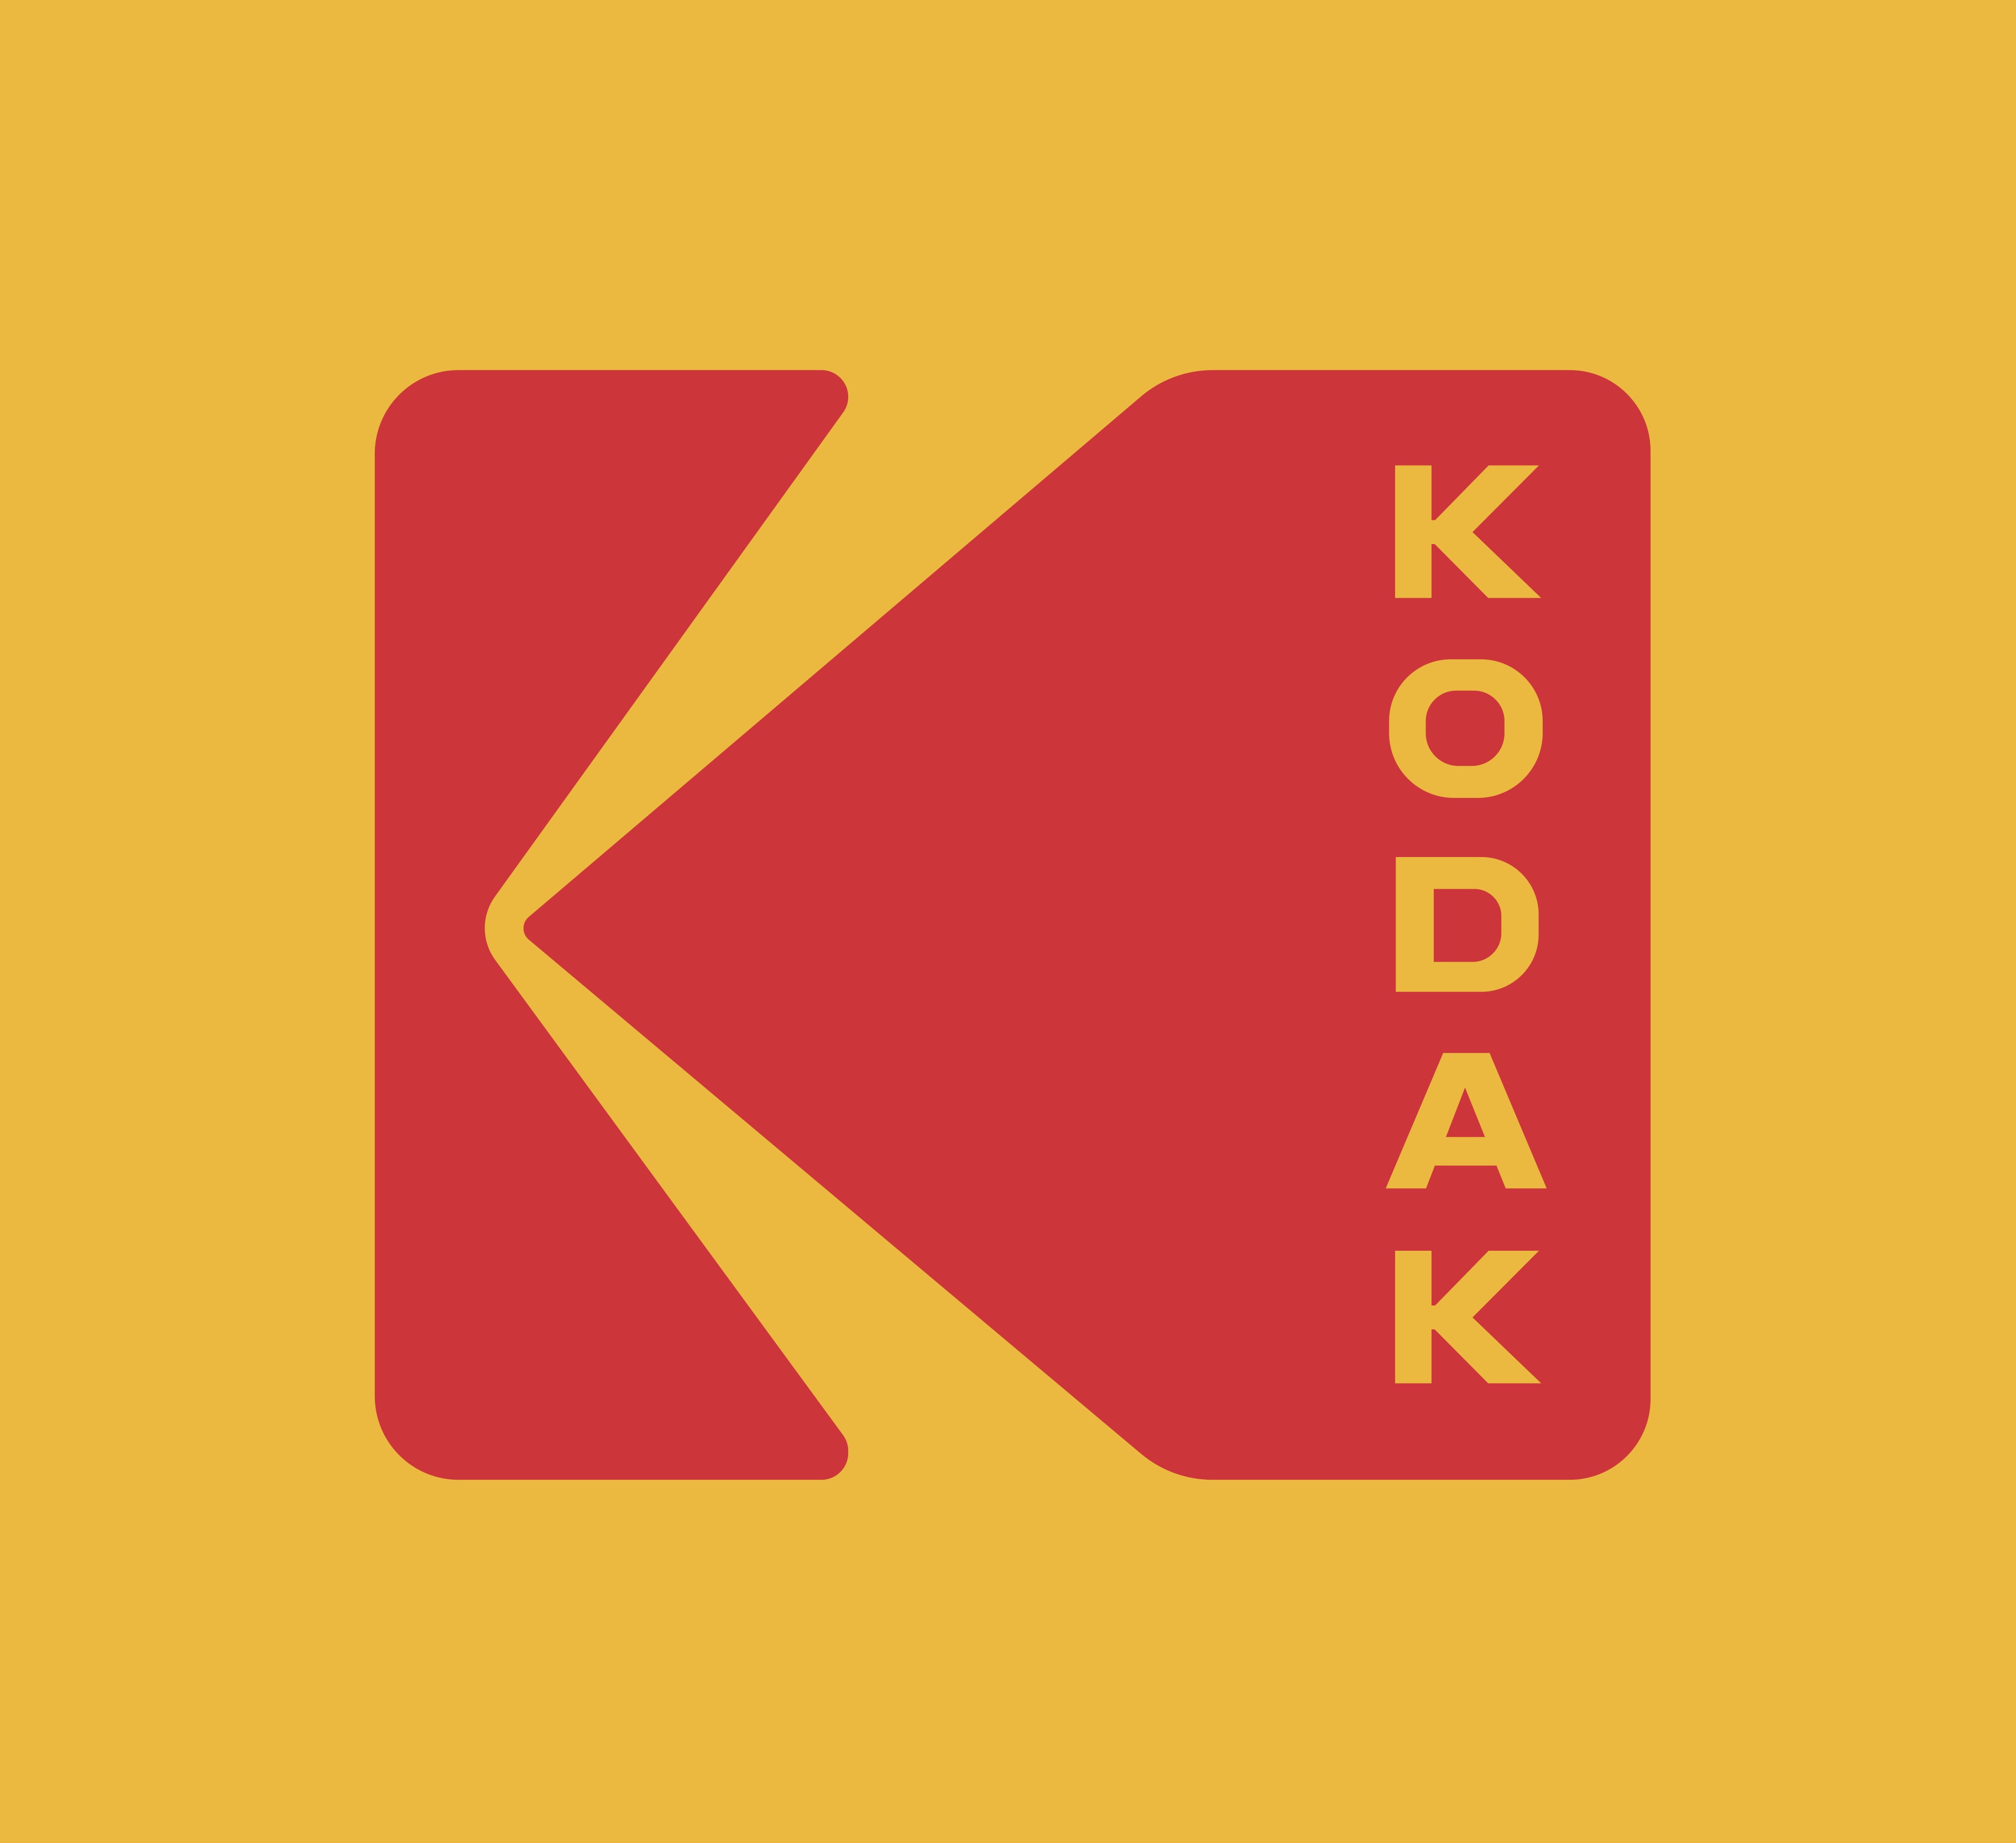 El logo de Kodak ha sido modificado en varias ocasiones para representar modernidad, pero en el último caso fue para darle un estilo retro.